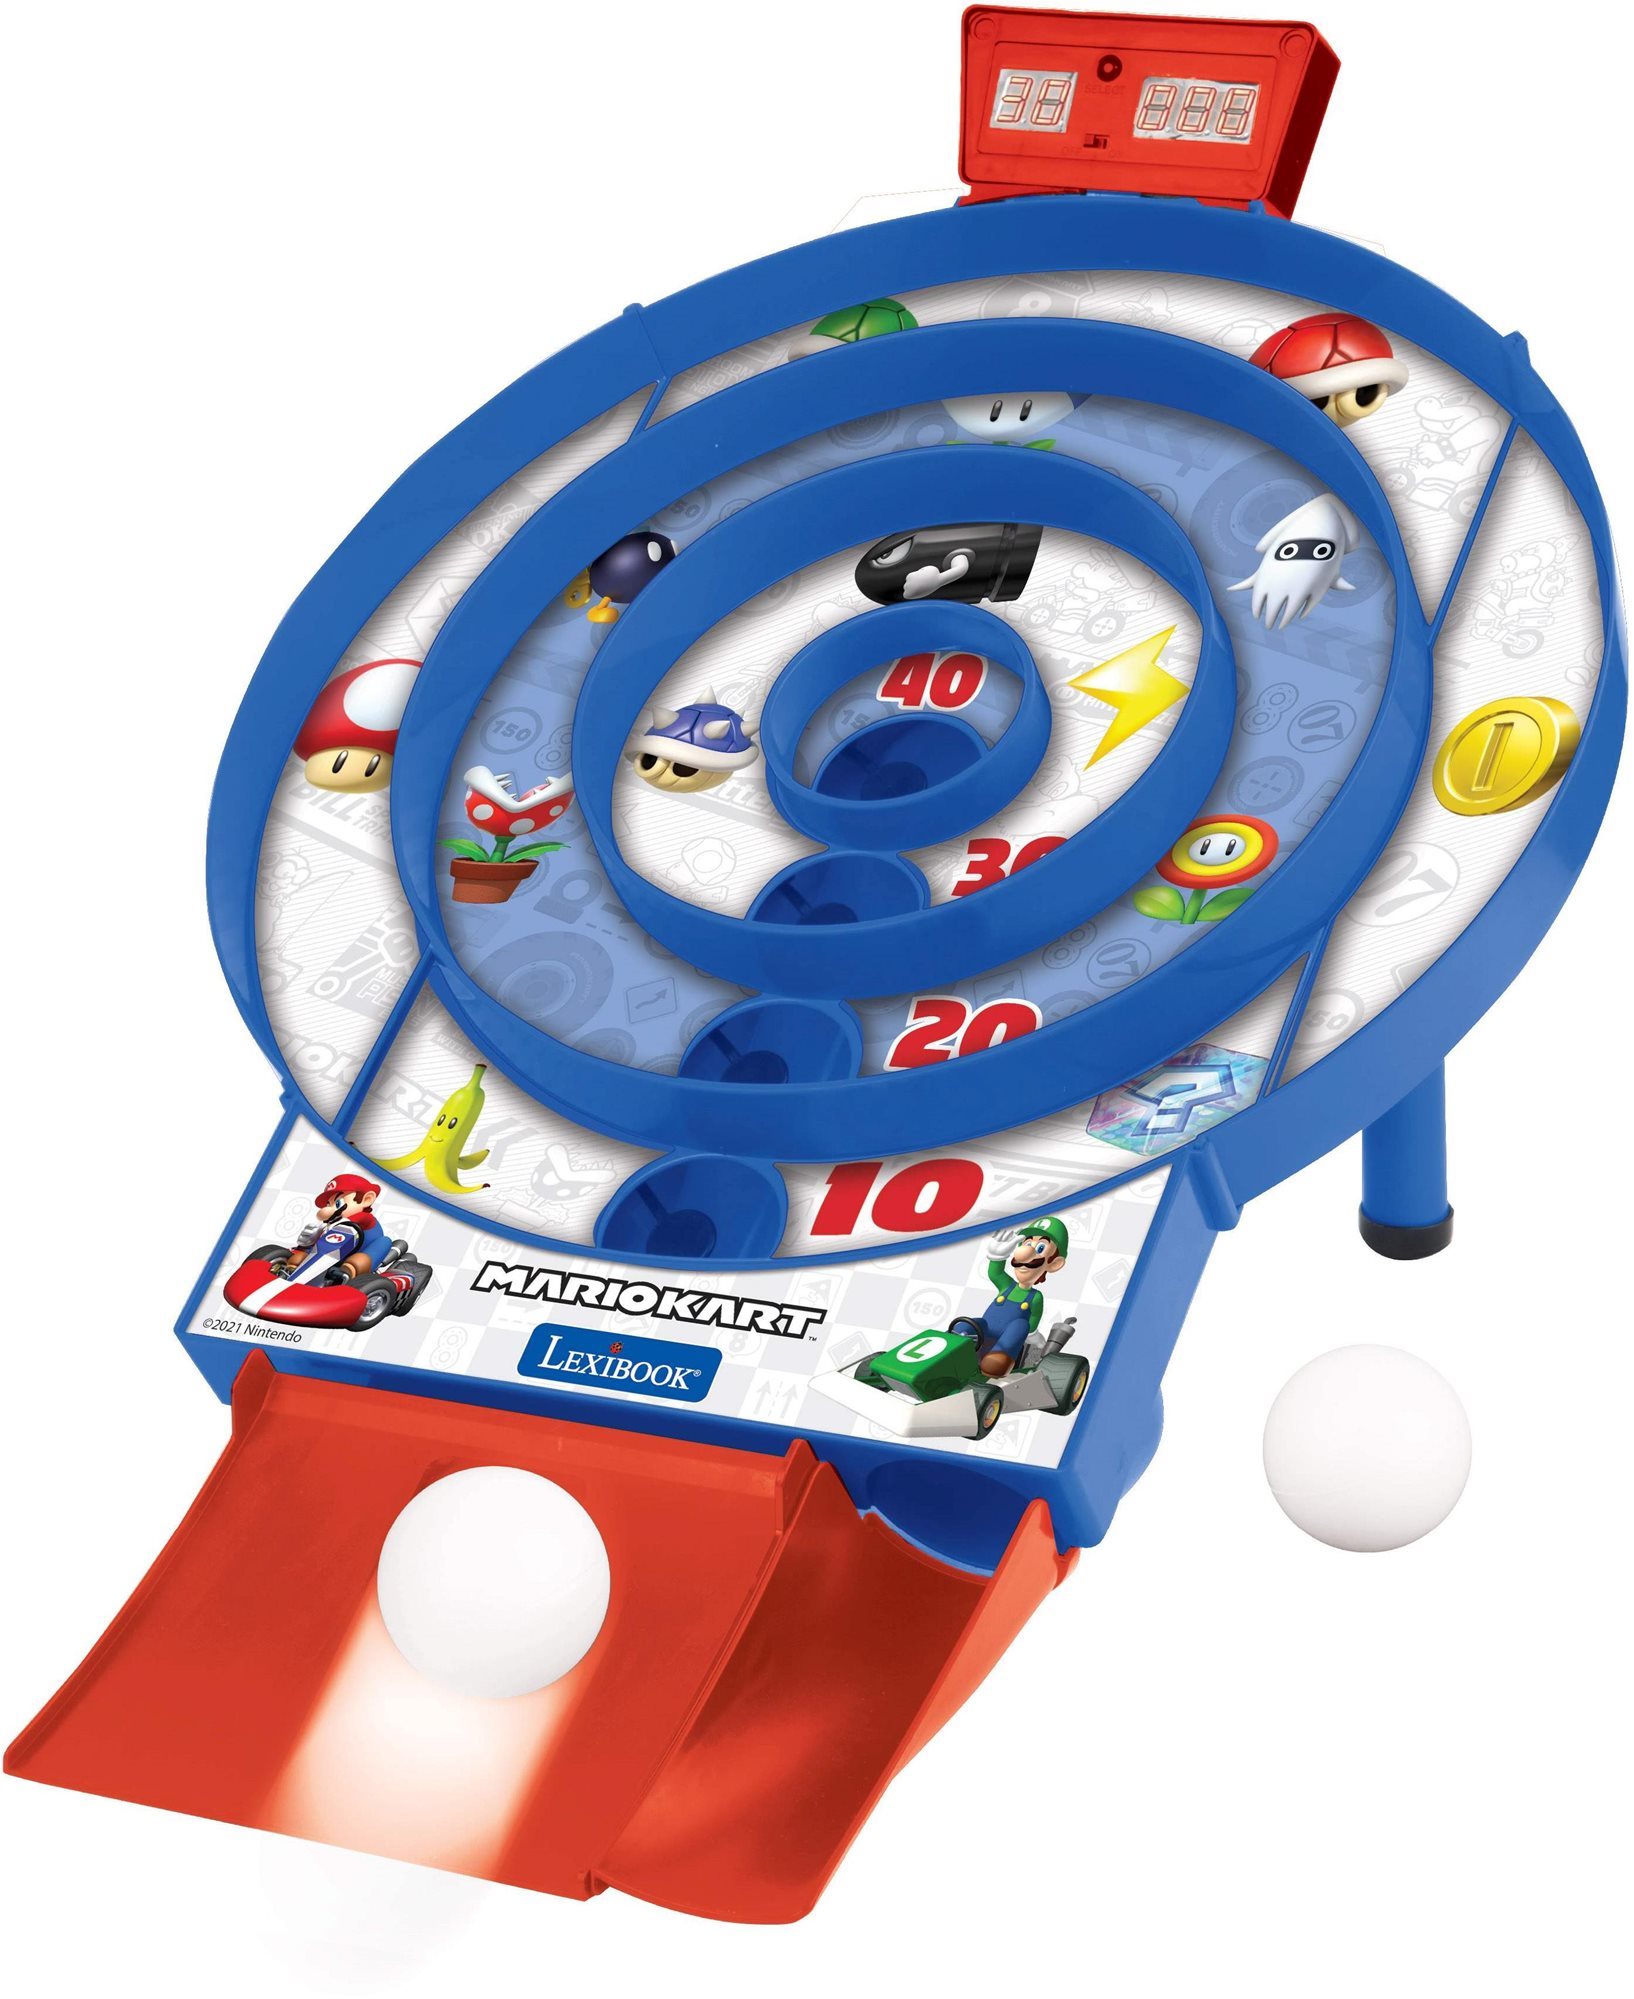 Interaktív játék Lexibook Elektronikus játék LCD kijelzővel és 2 labdával Mario Kart